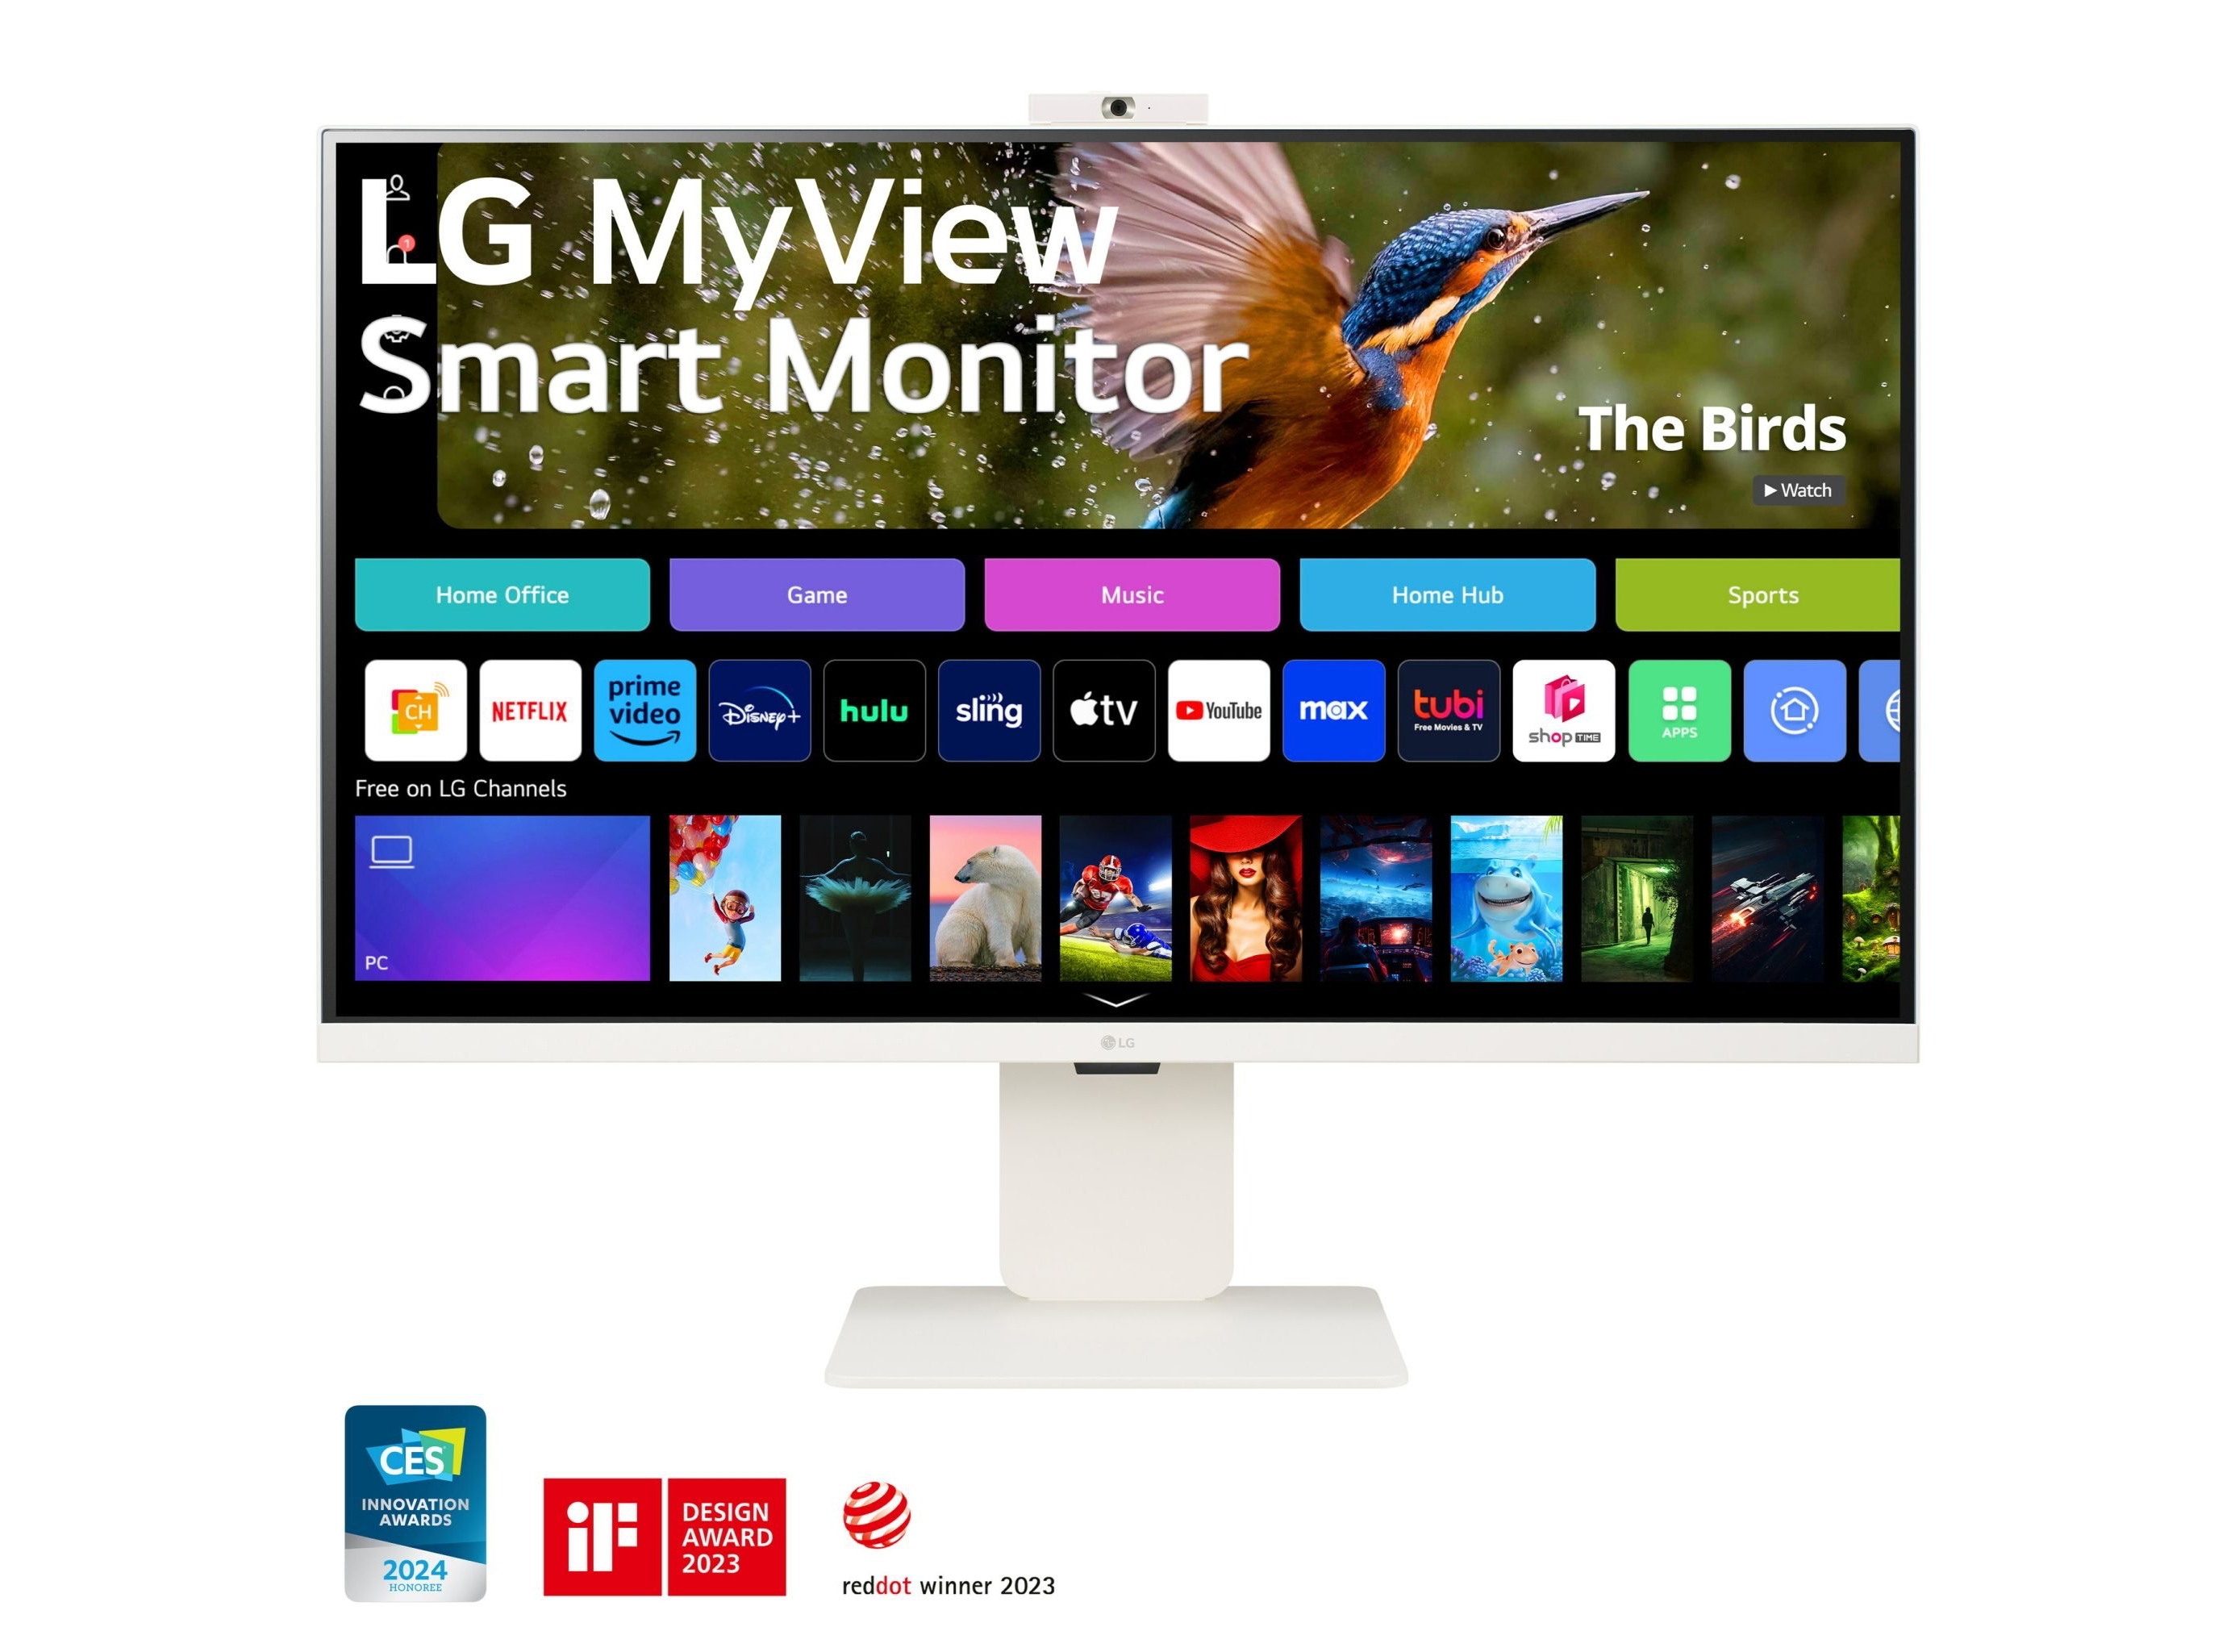 LG har lanserat en serie MyView Smart Monitors med upp till 4K-skärmar, AirPlay 2 och webOS ombord, till ett pris från 199 USD